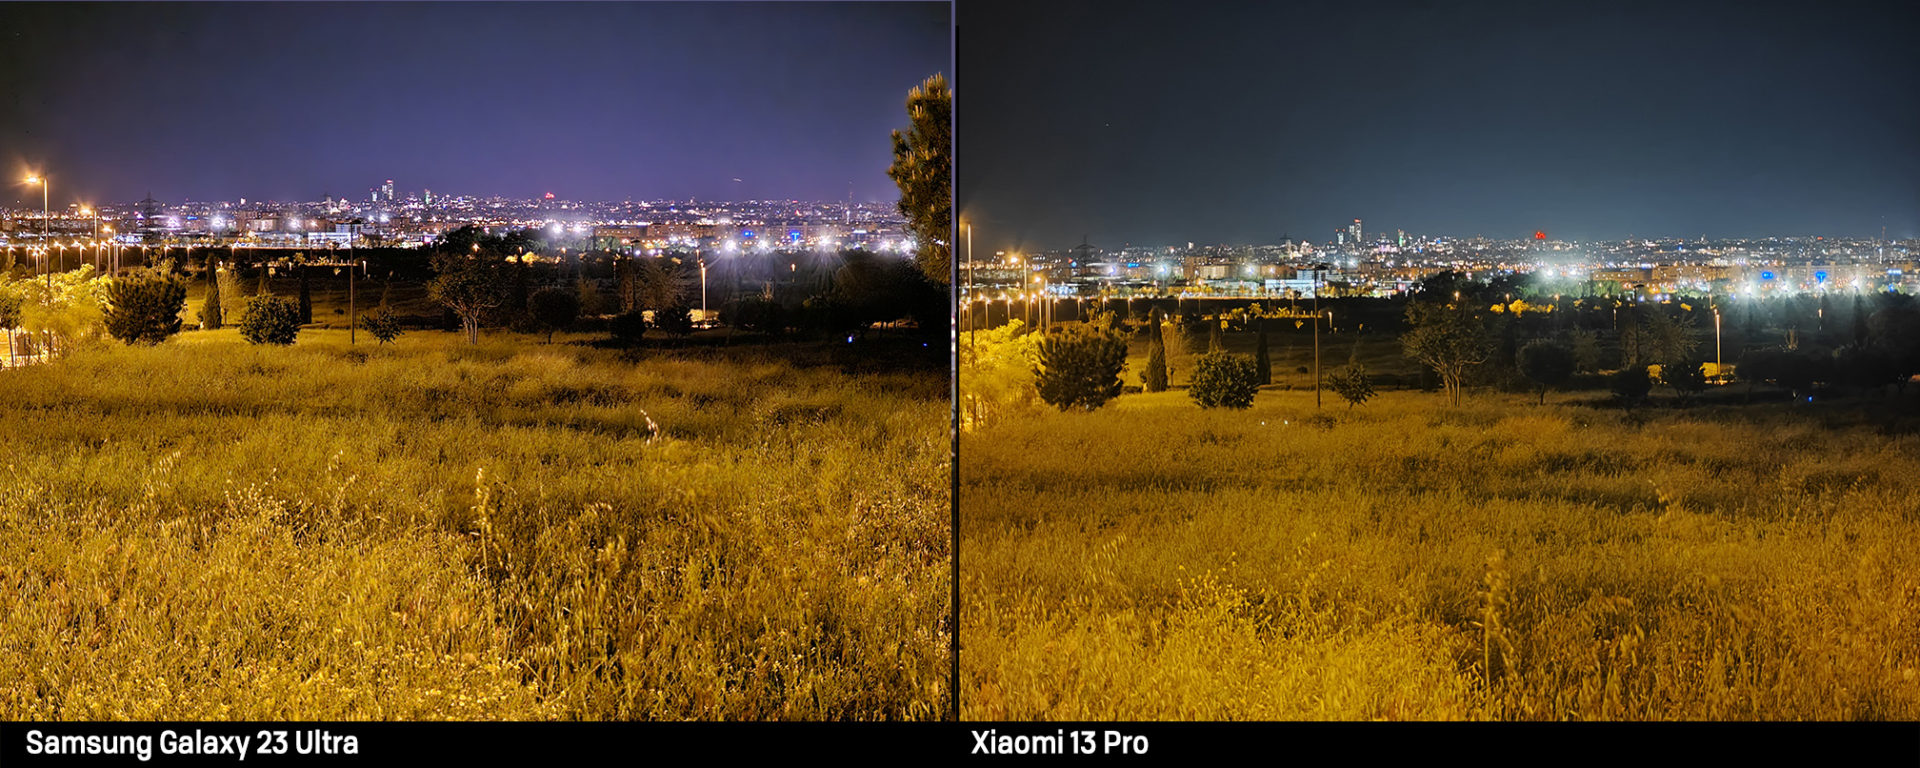 Comparativa foto nocturna con teleobjetivo Samsung S23 Ultra y Xiaomi 13 Pro